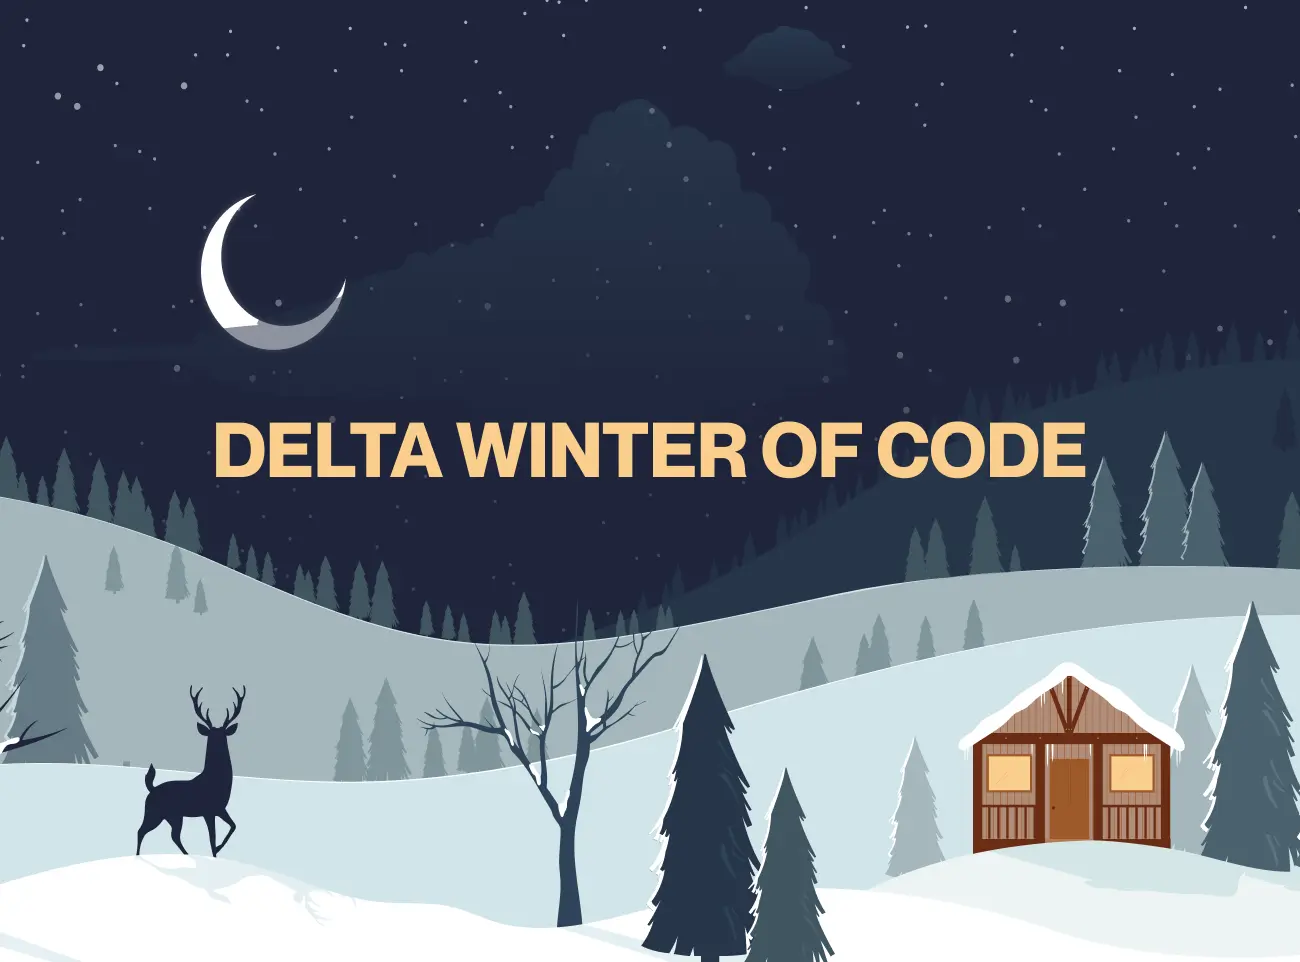 Delta Winter of Code